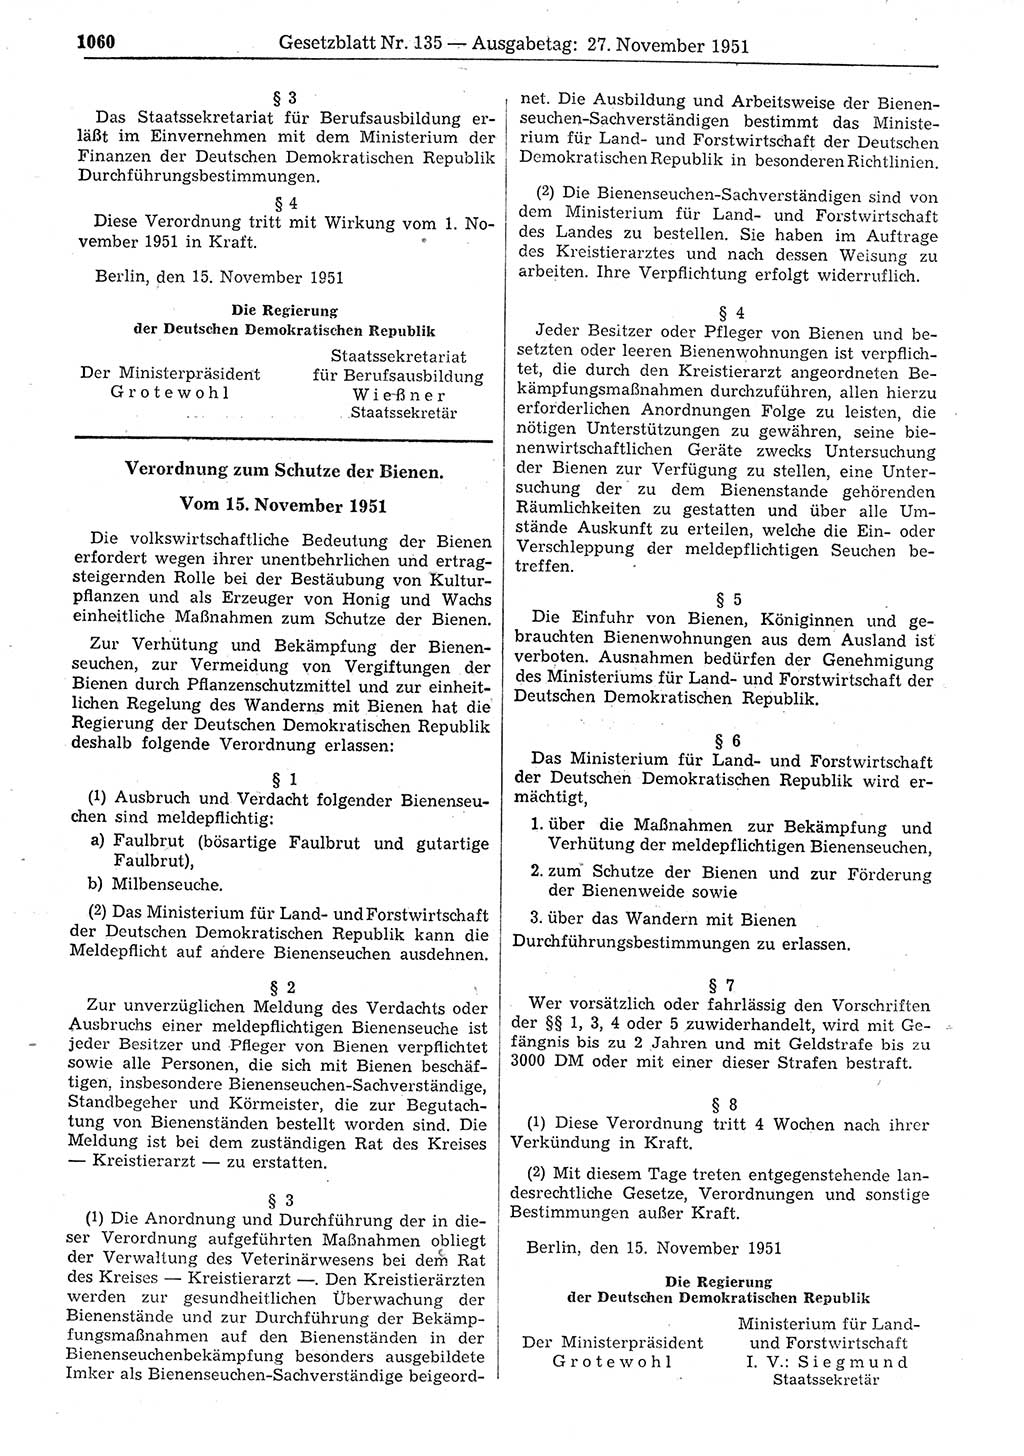 Gesetzblatt (GBl.) der Deutschen Demokratischen Republik (DDR) 1951, Seite 1060 (GBl. DDR 1951, S. 1060)